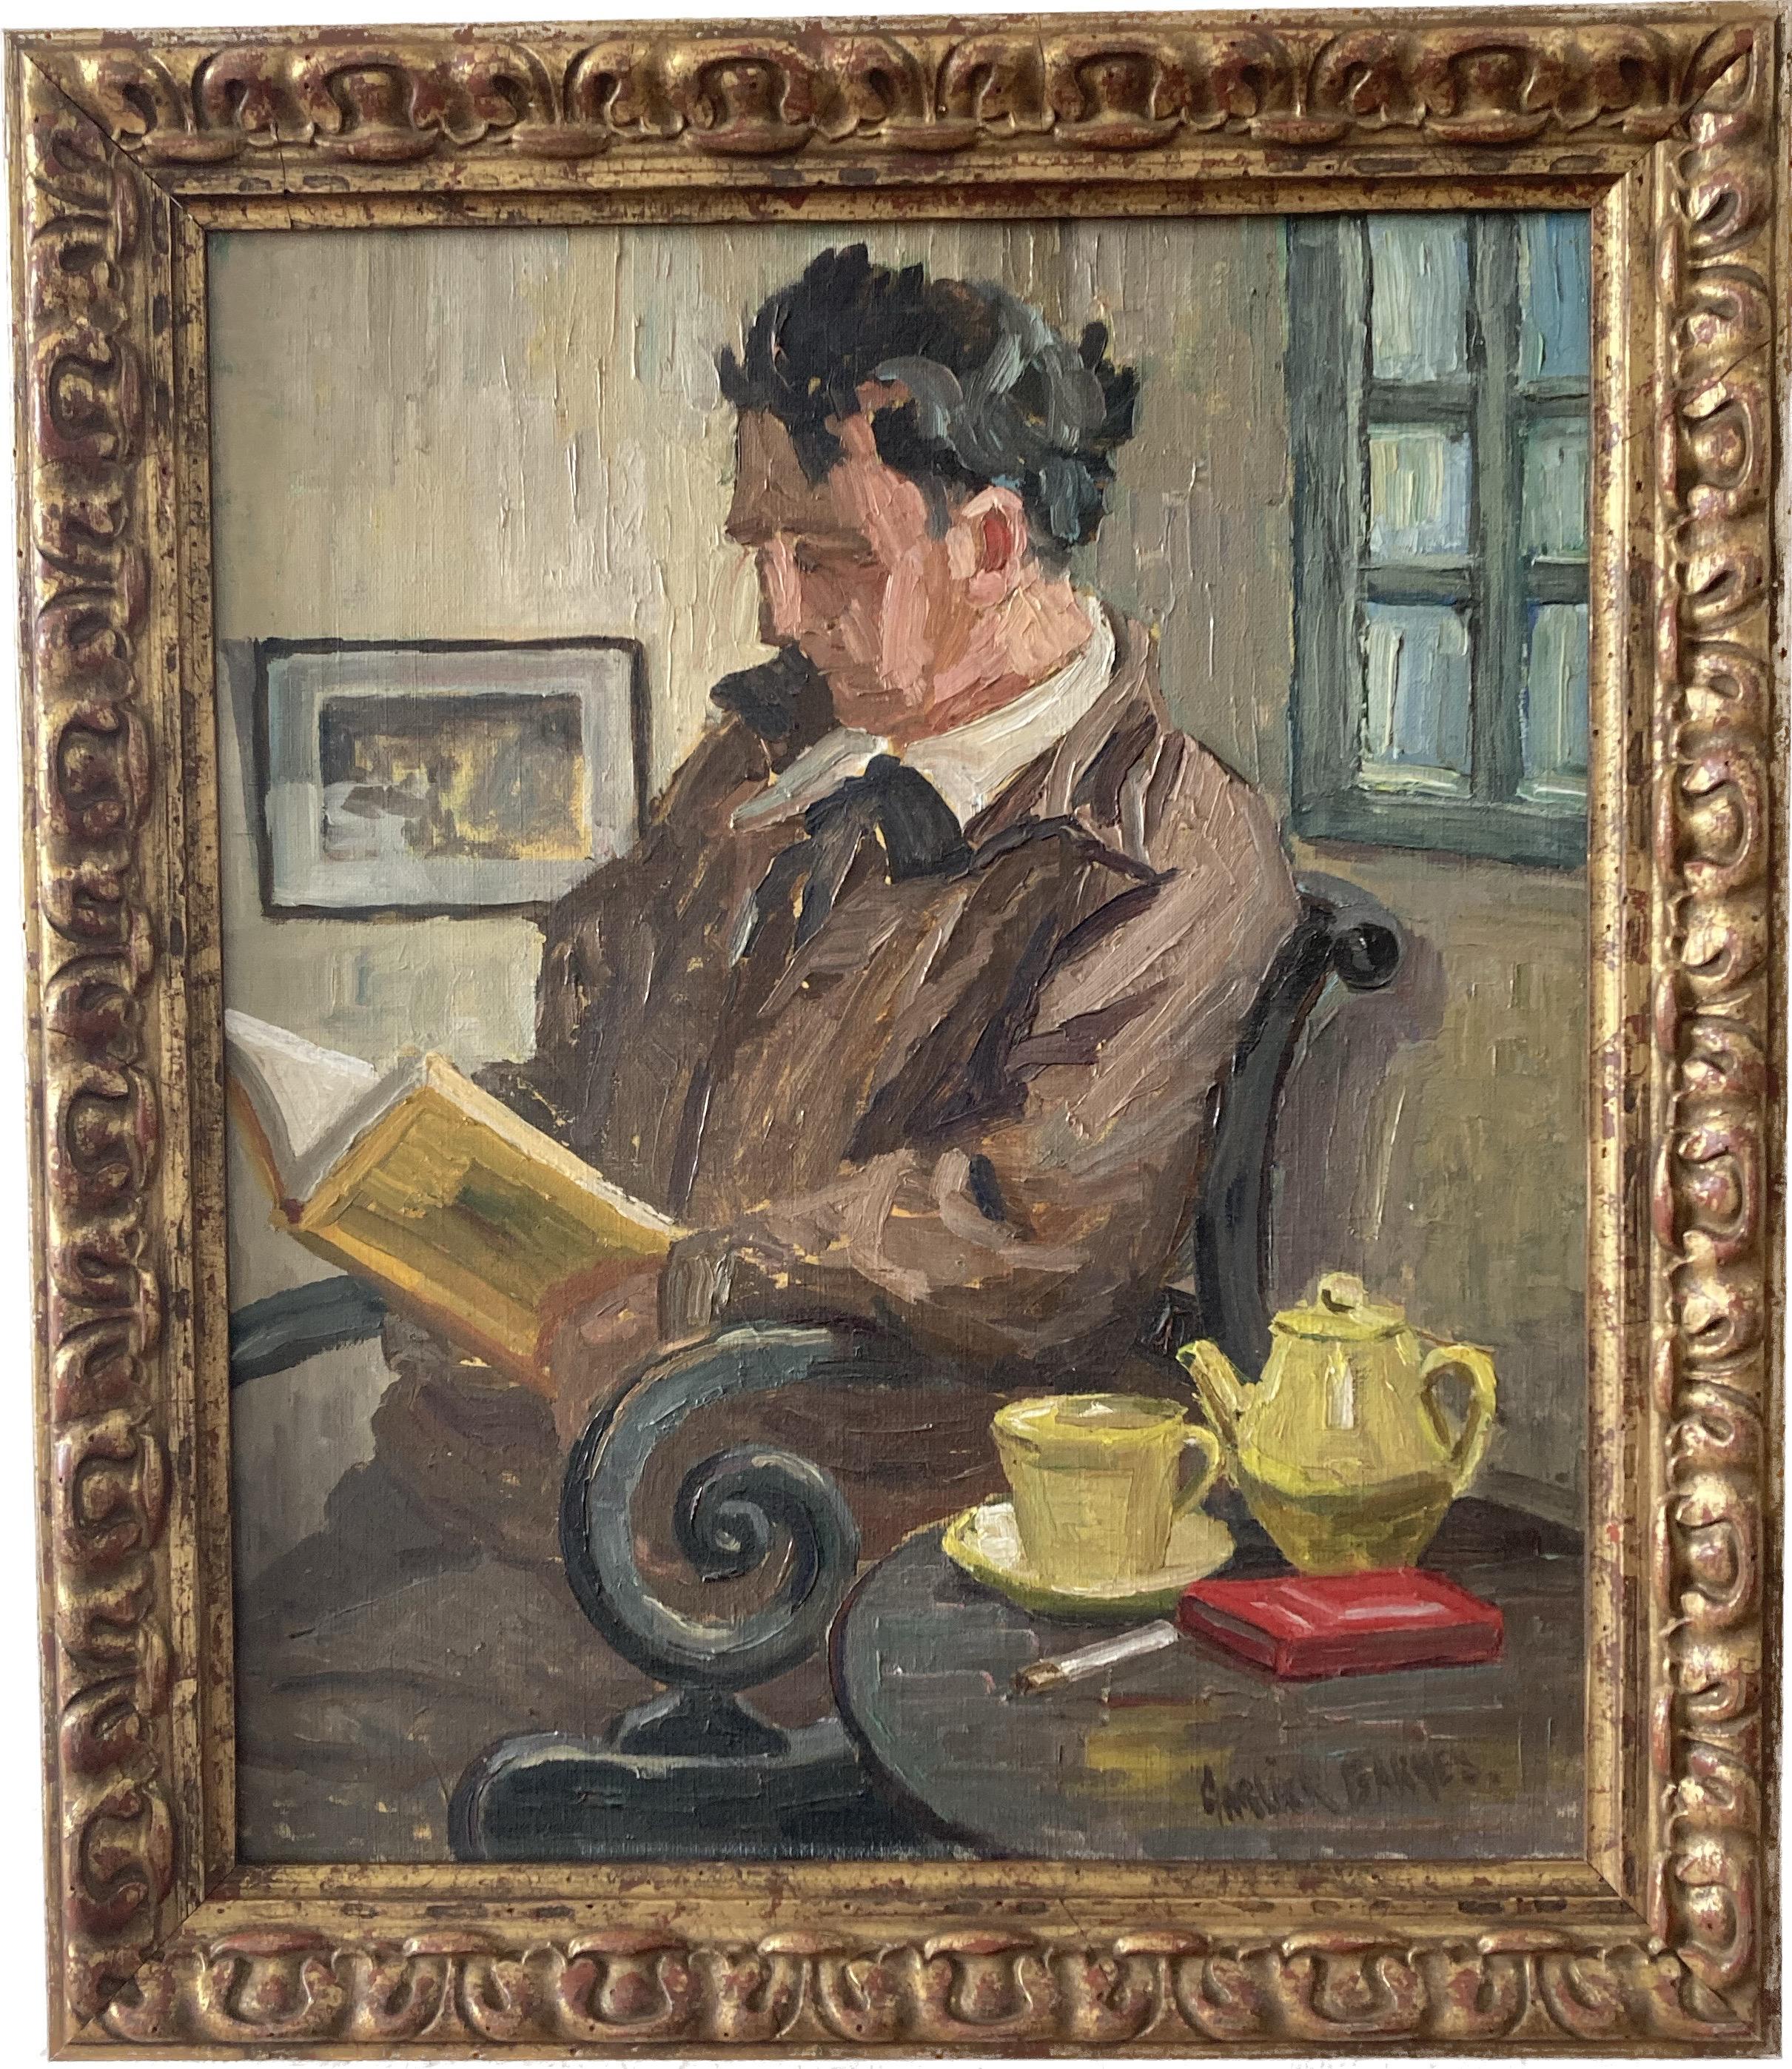 Female Cornish artist, Walter Sickert pupil, Cubist portrait of man in interior